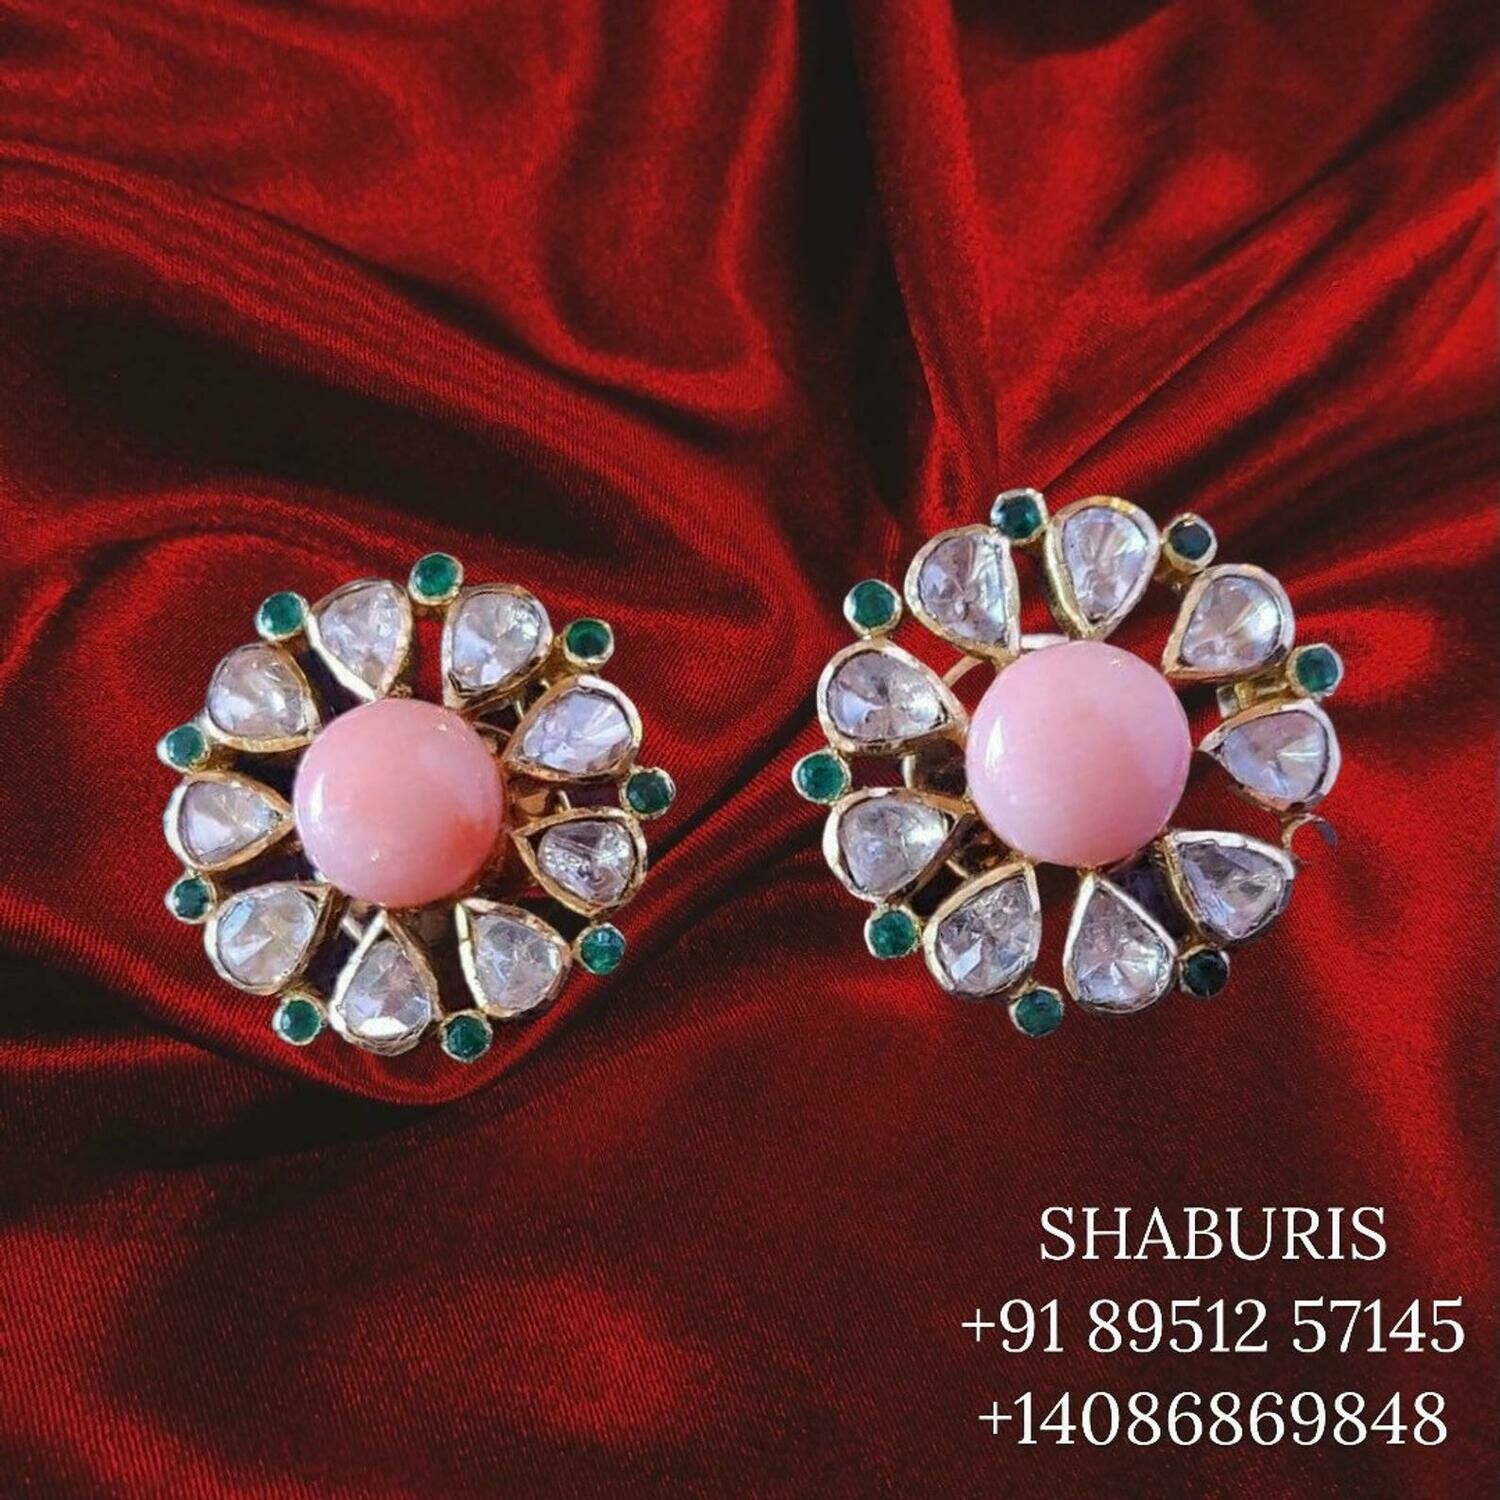 Polki Jewelry,Pure Silver Jewellery Indian ,diamond Earrings,Big Indian earrings,gem stone jewelry,Indian Wedding Jewelry-NIHIRA-SHABURIS